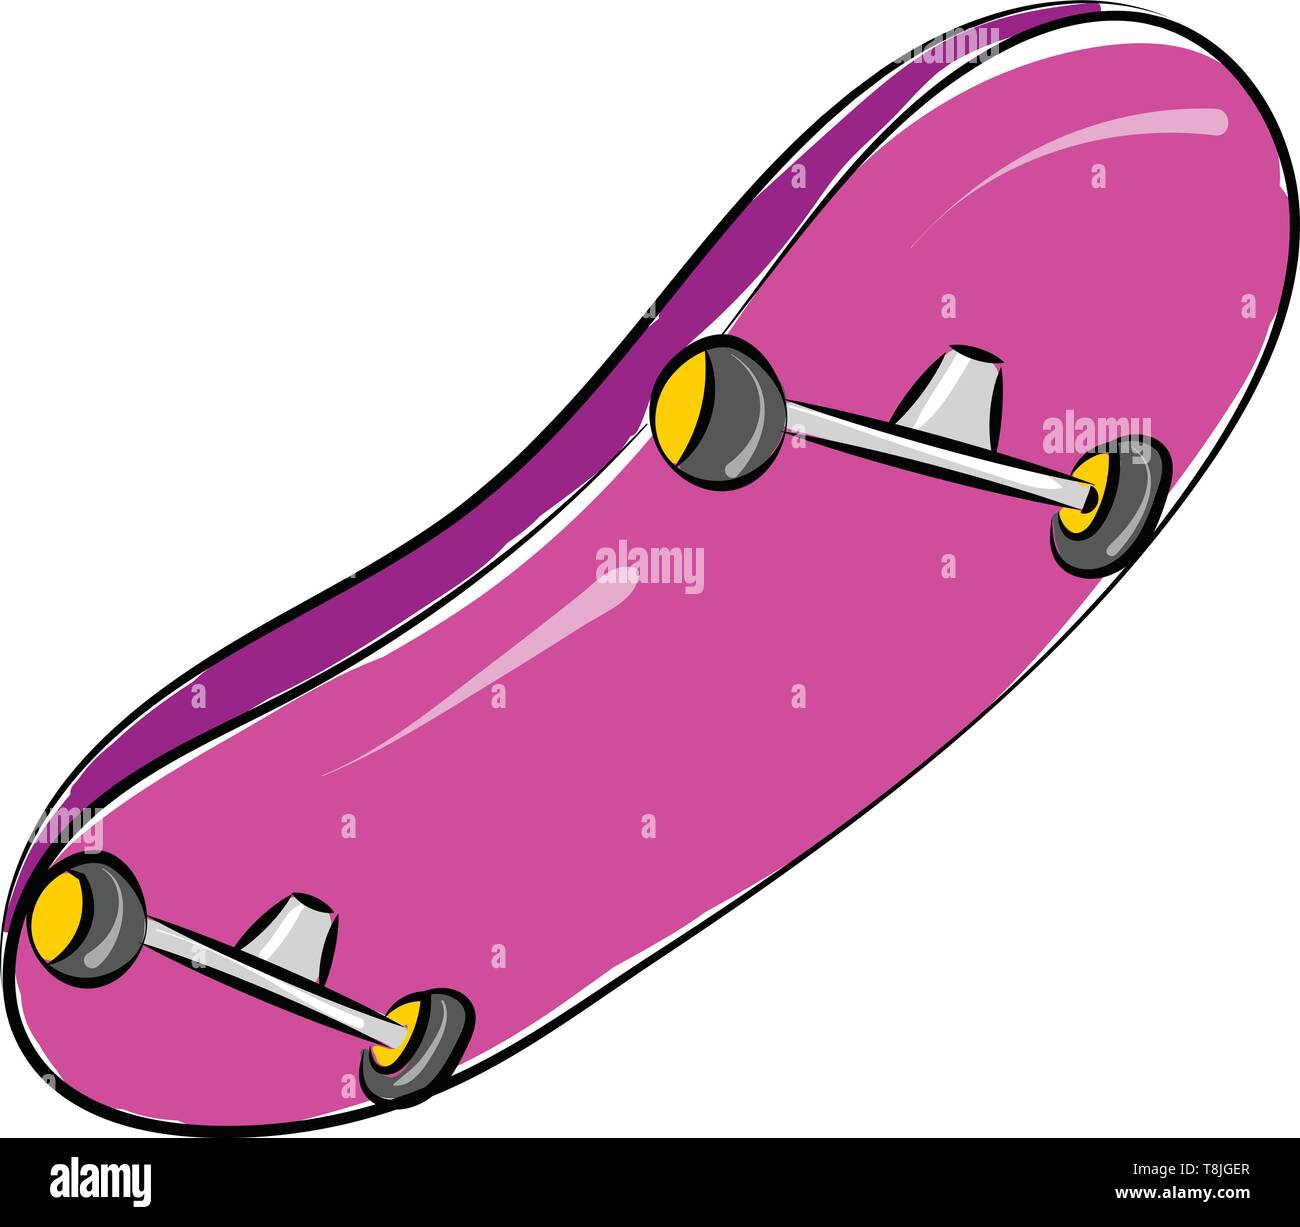 Skate board wheels Banque d'images vectorielles - Alamy